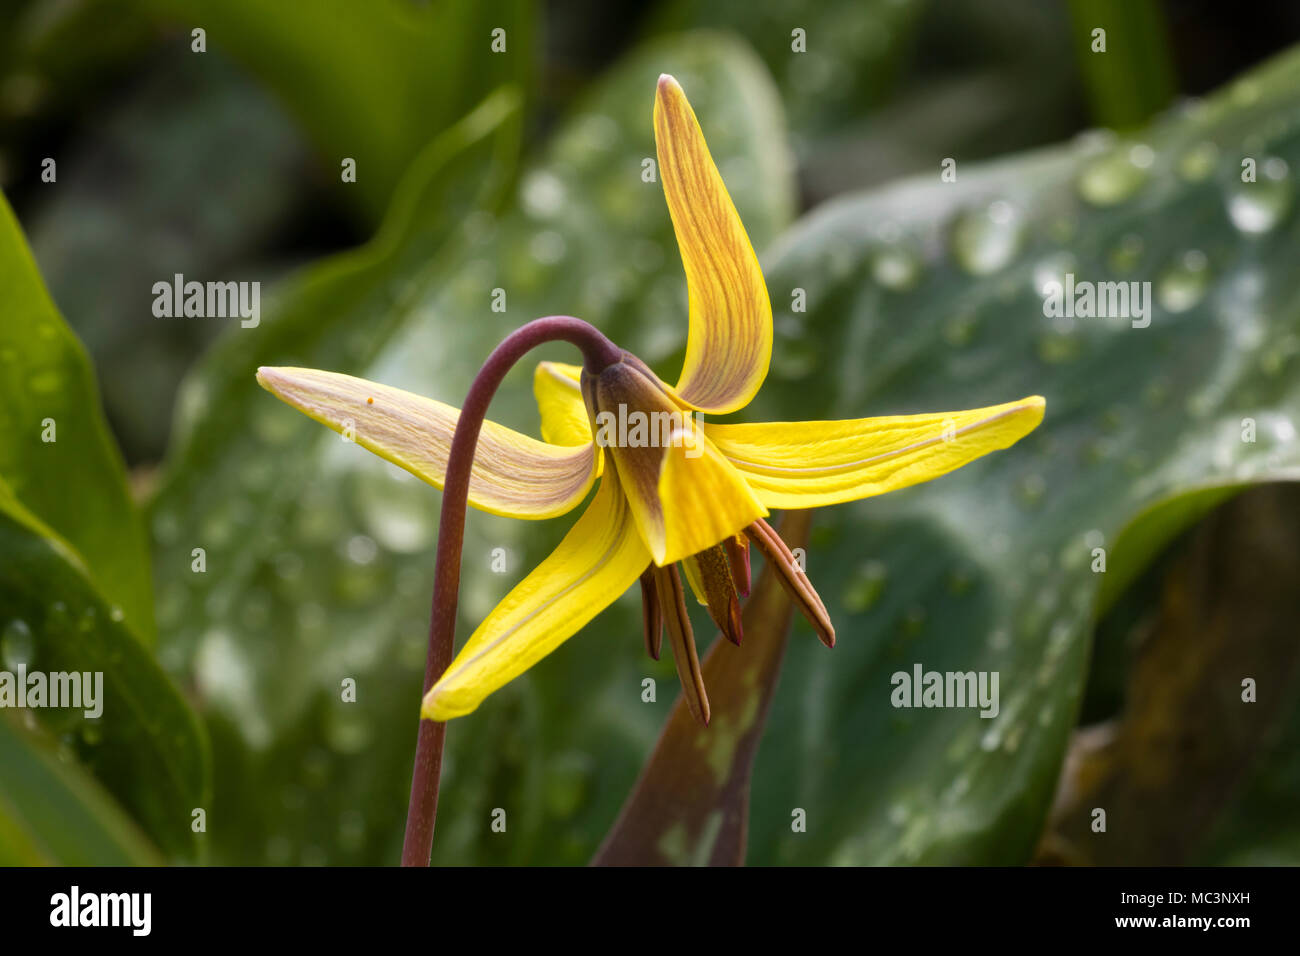 Bronzo e fiore giallo della trota lily, Erythronium americanum, Mostra riflessi petali Foto Stock